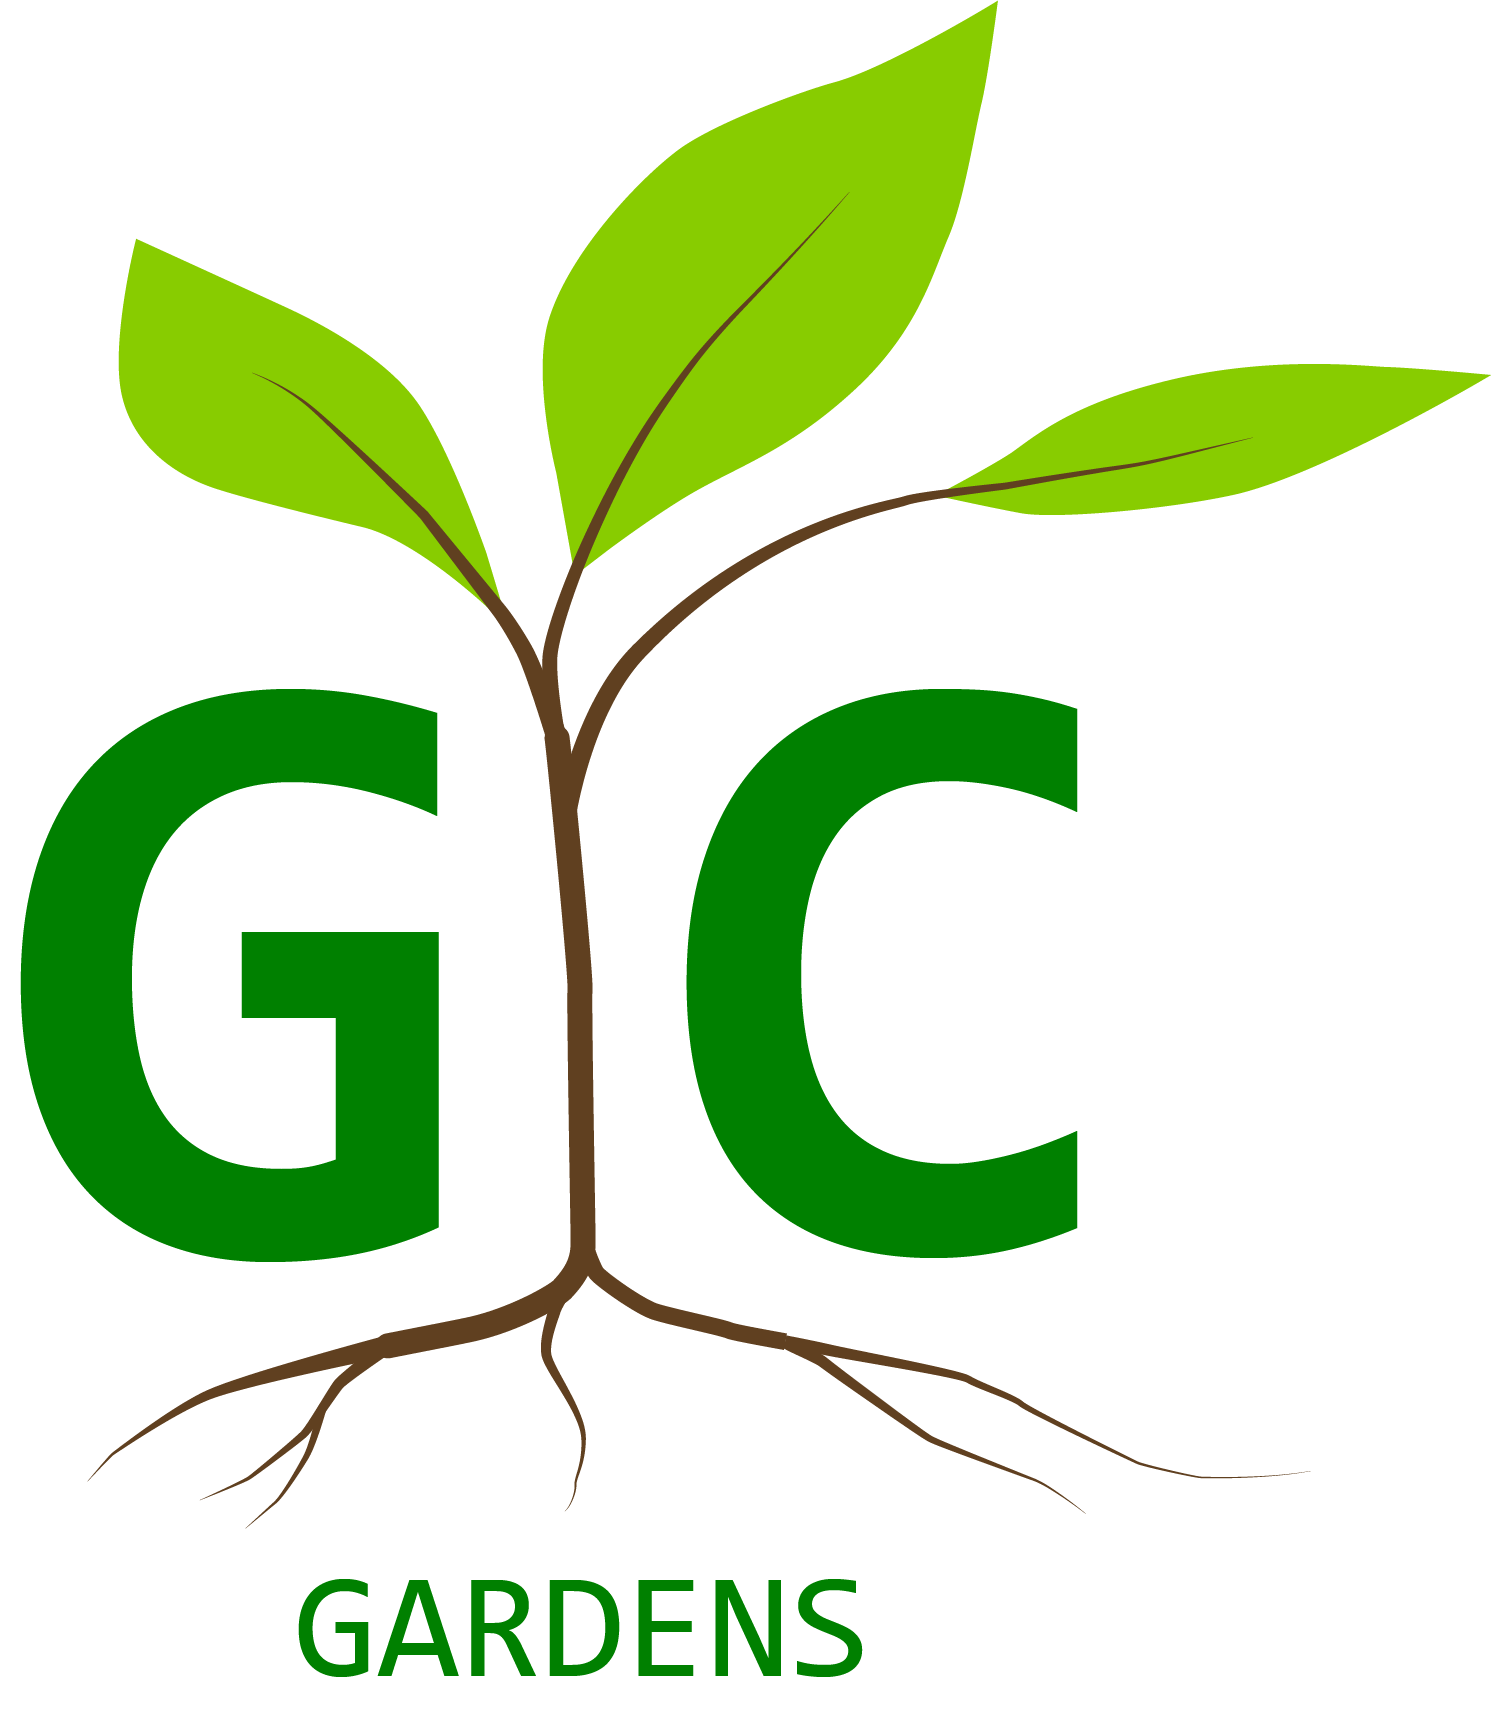 GC Gardens